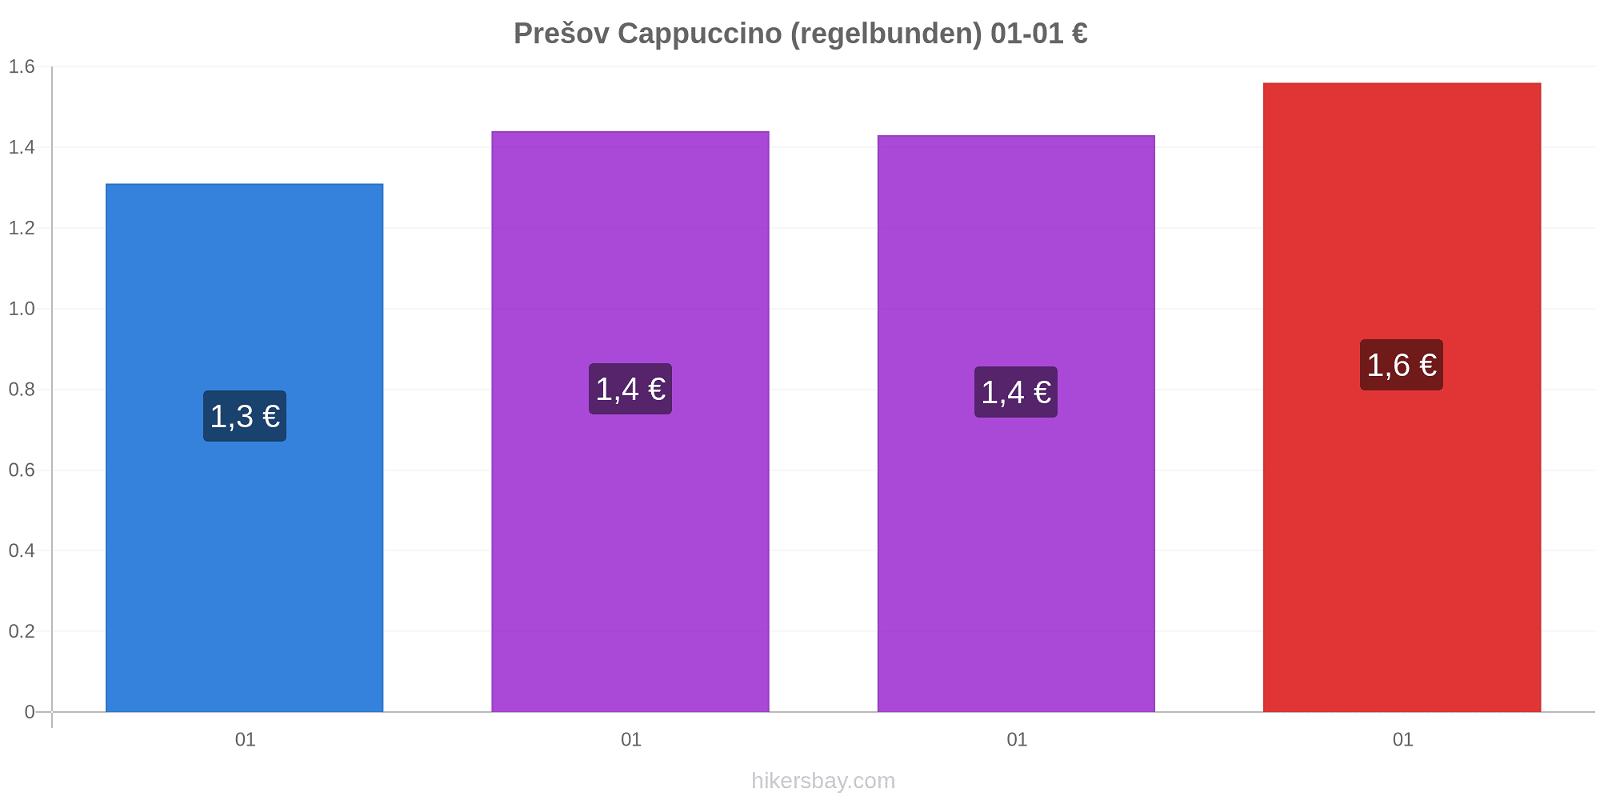 Prešov prisförändringar Cappuccino (regelbunden) hikersbay.com